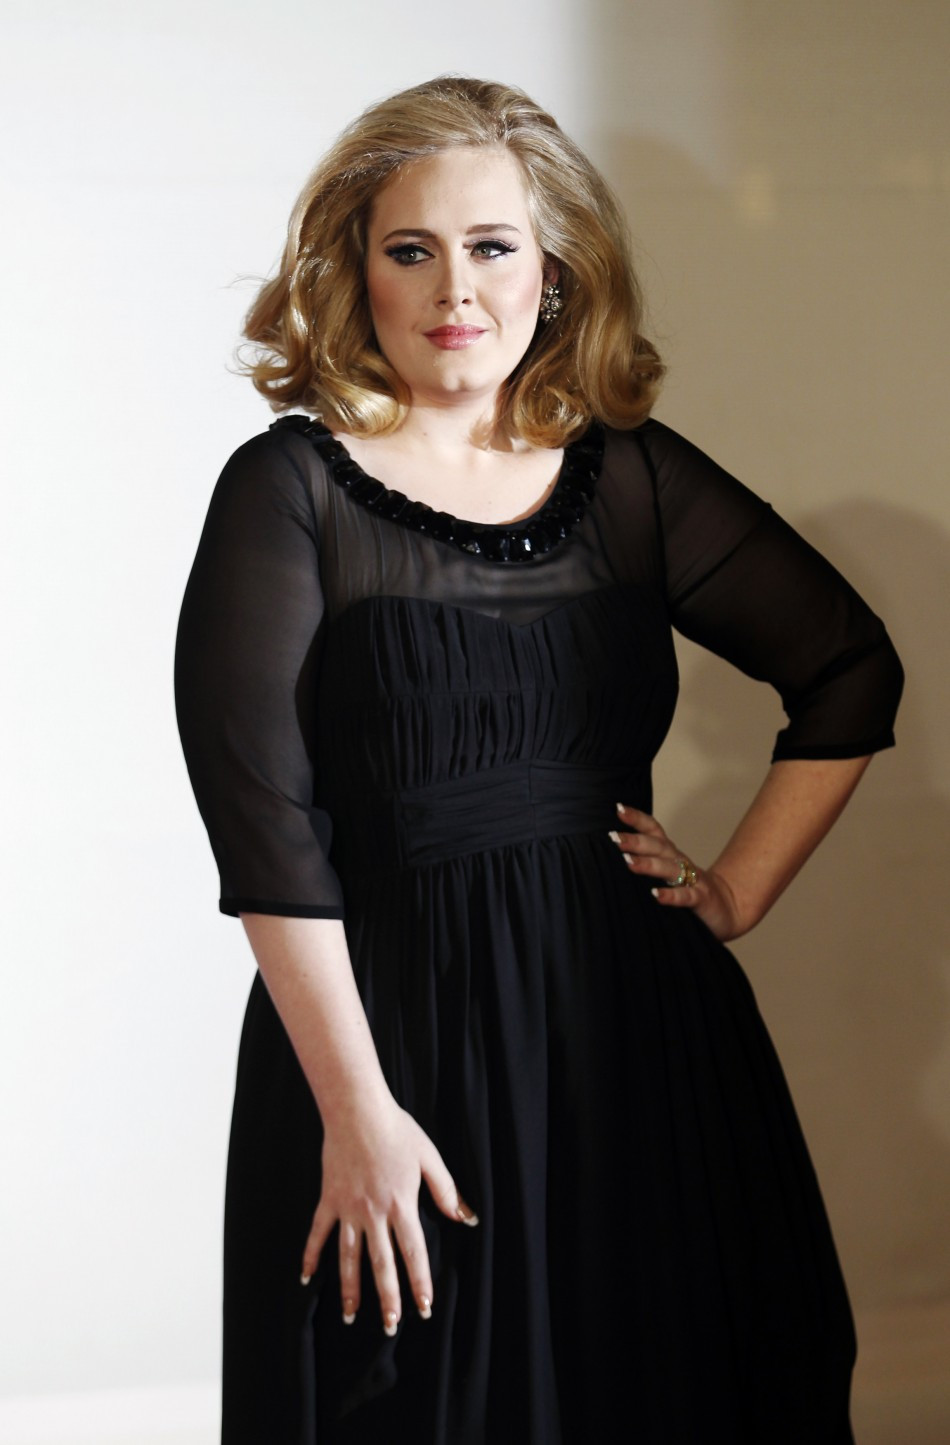 Adele'in özel fotoğrafları hacklendi! - Sayfa 3